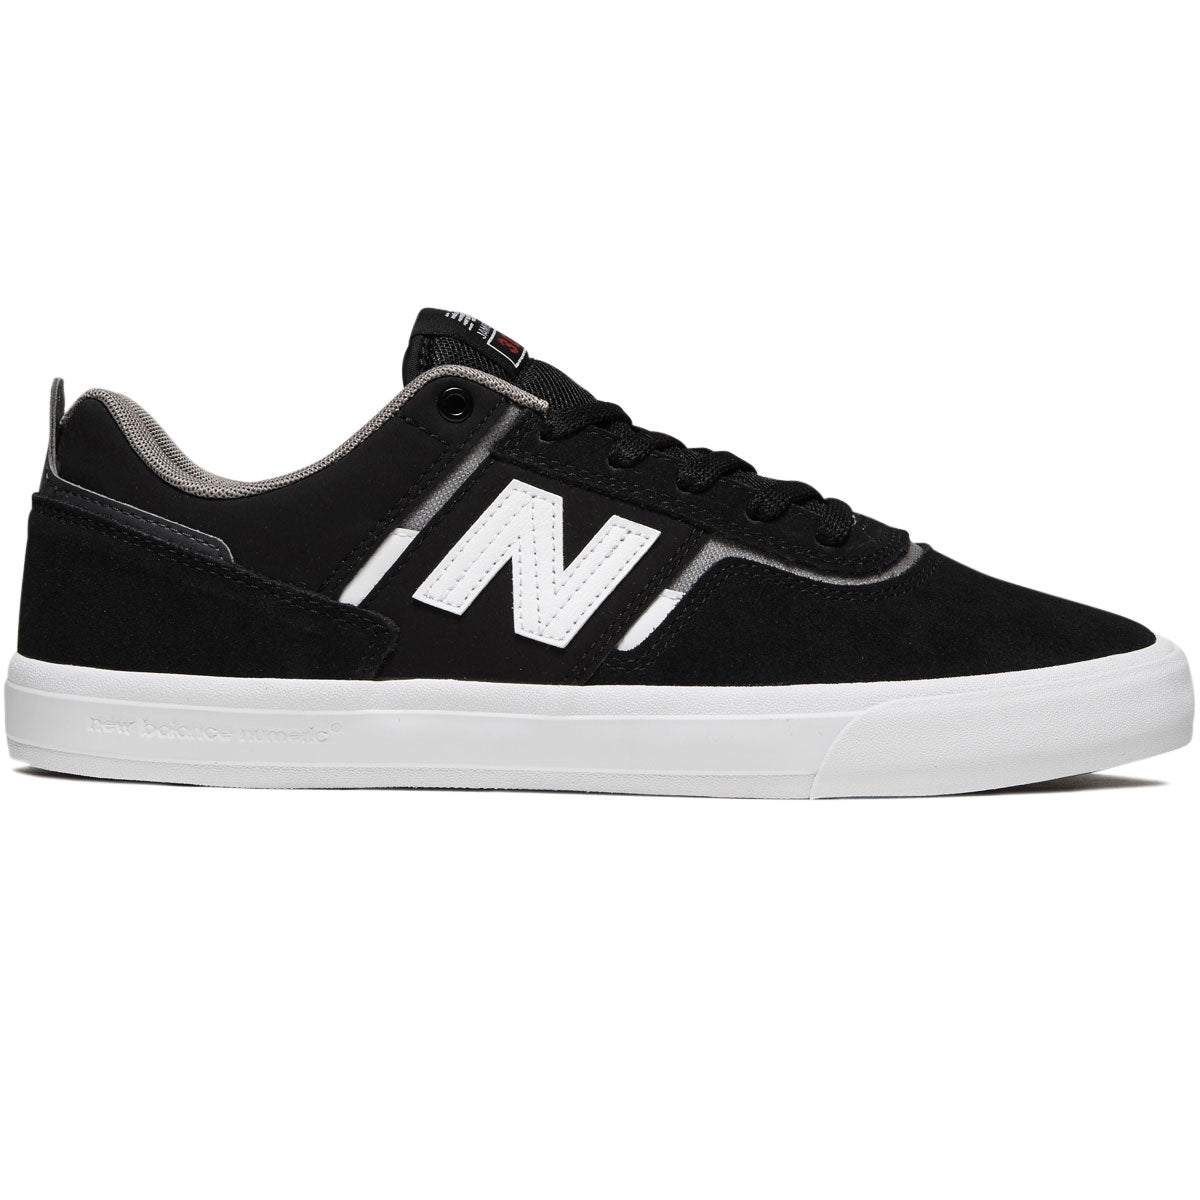 New Balance 306 Foy Shoes - Black/White/Grey image 1